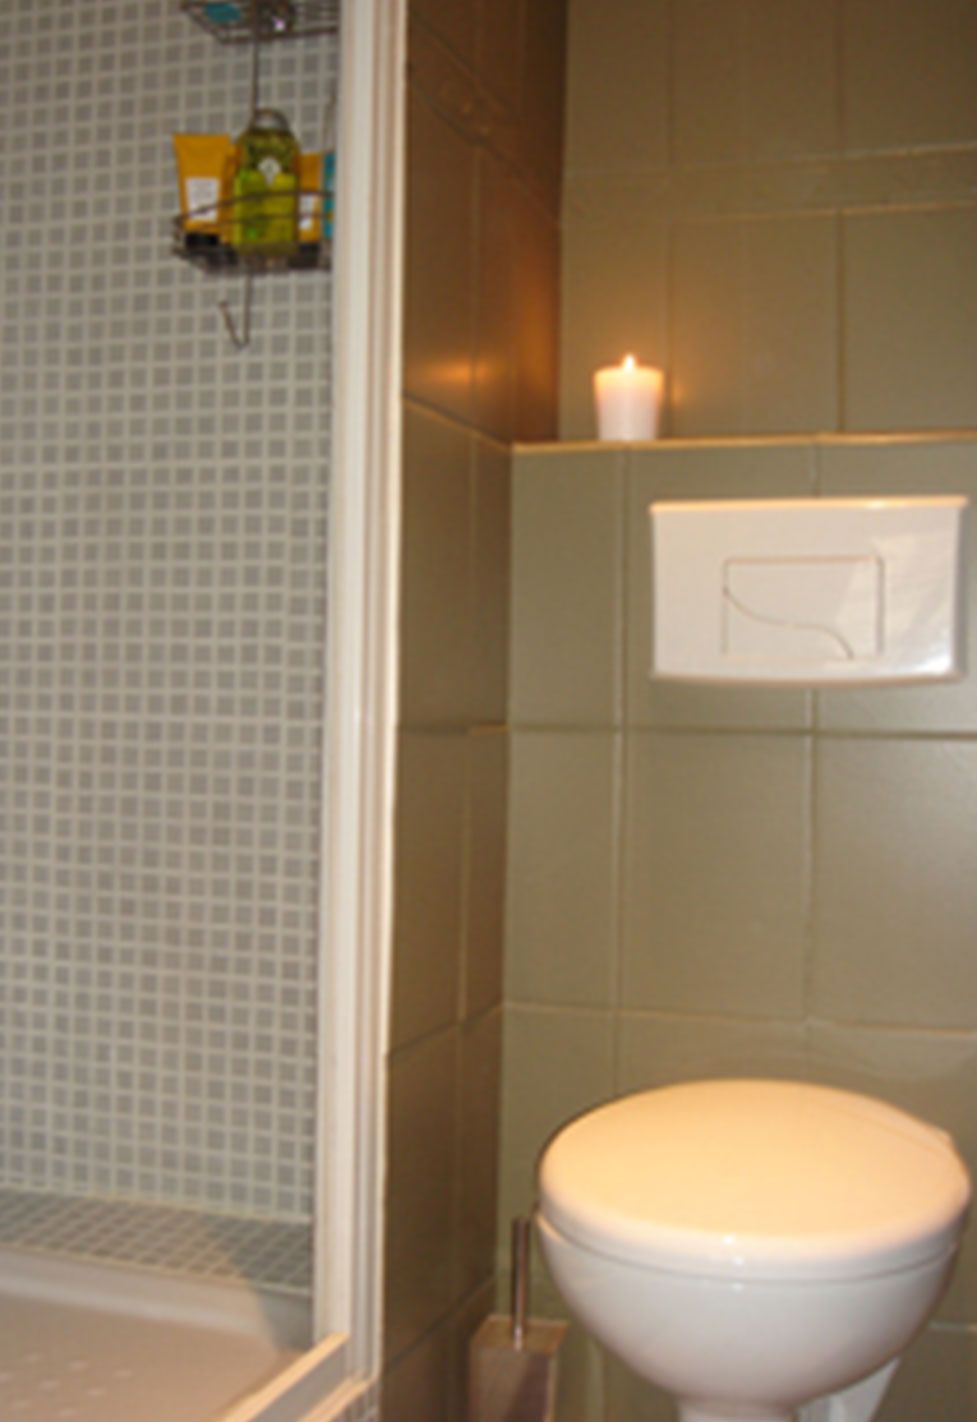 Toilettes et douche d'un appartement ancien à Paris 6ème. Réalisation ID Interior Design par Anne-Laure Ferry-Adam, architecte d'intérieur à Genève.